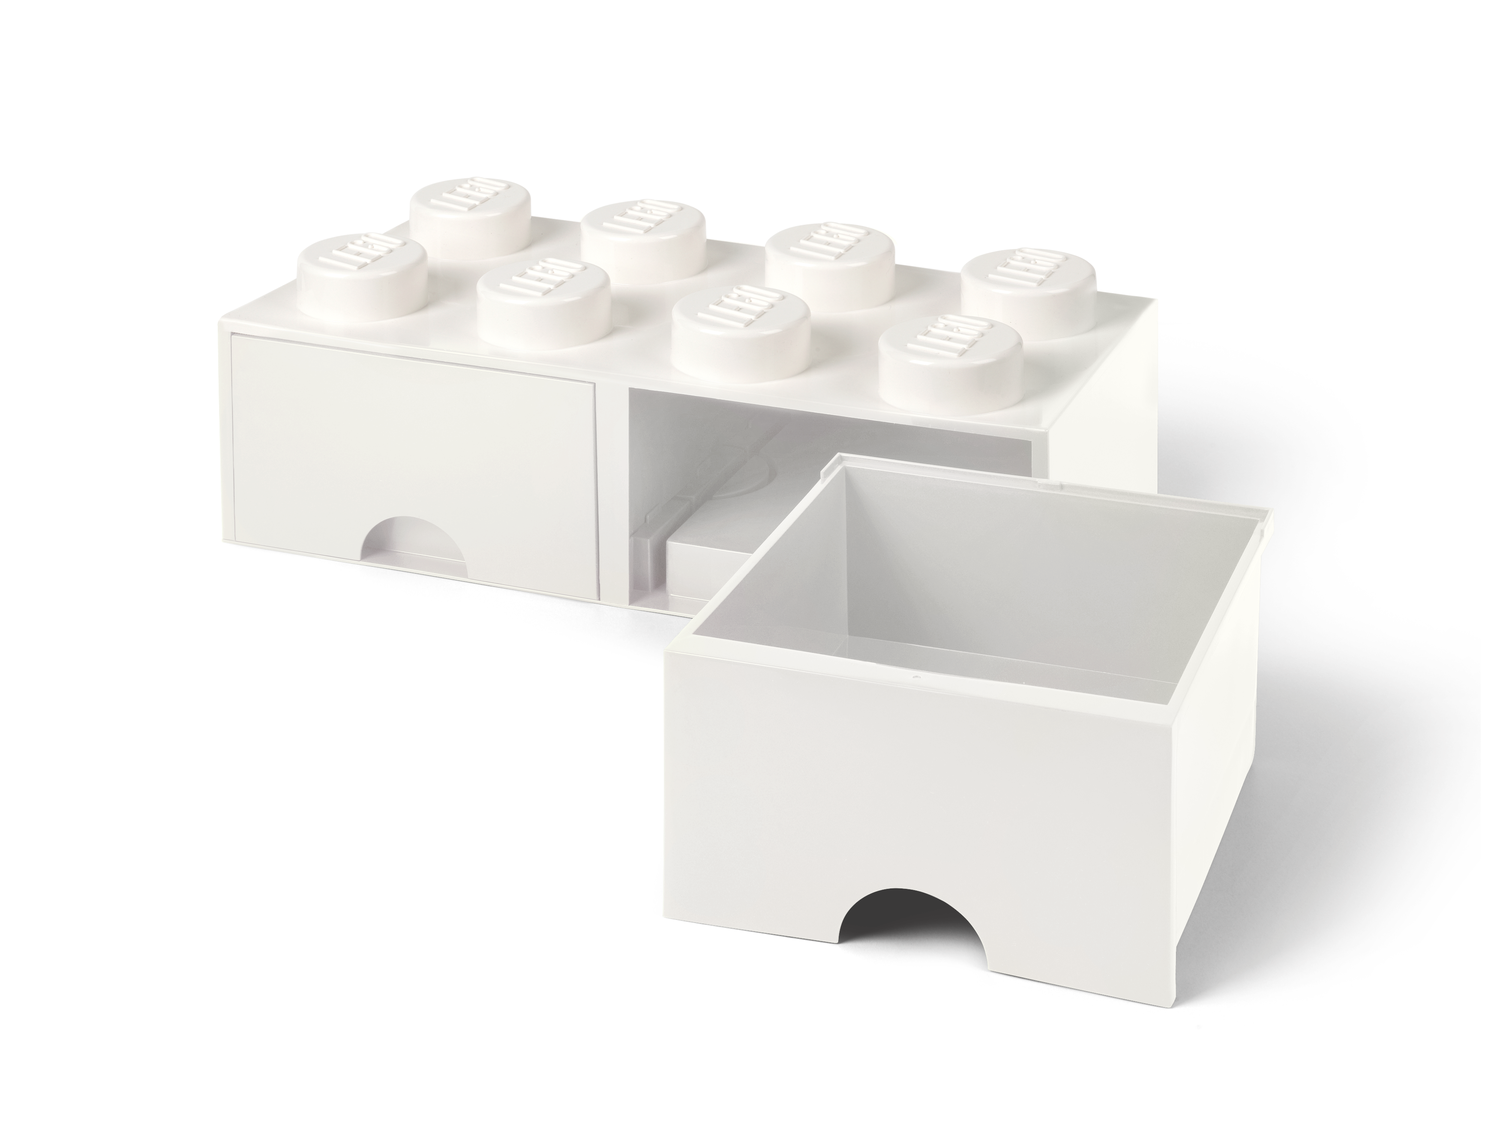 Brique 8 tenons avec tiroirs – blanc 5006209 | Autre | Boutique LEGO® officielle FR